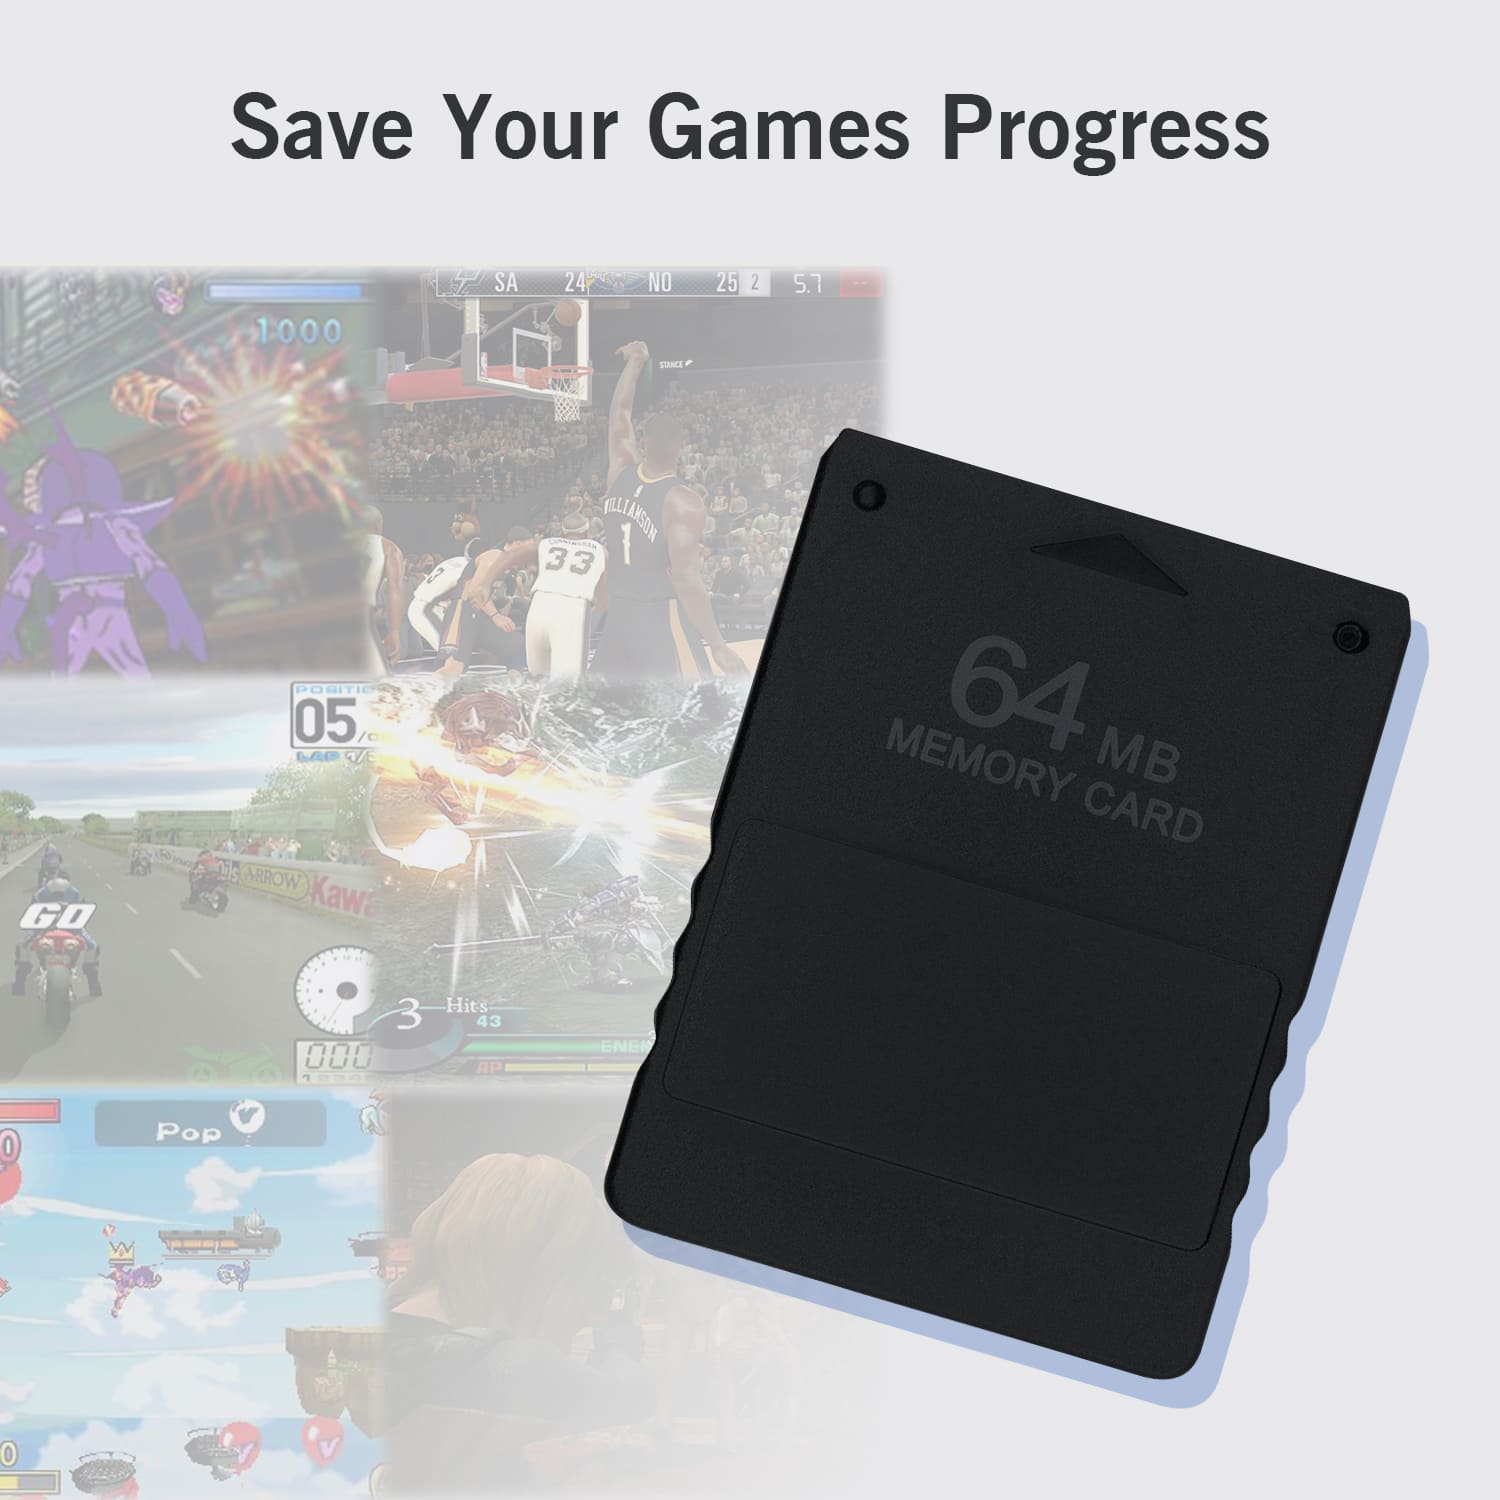 Playstation 2 64MB Memory Card